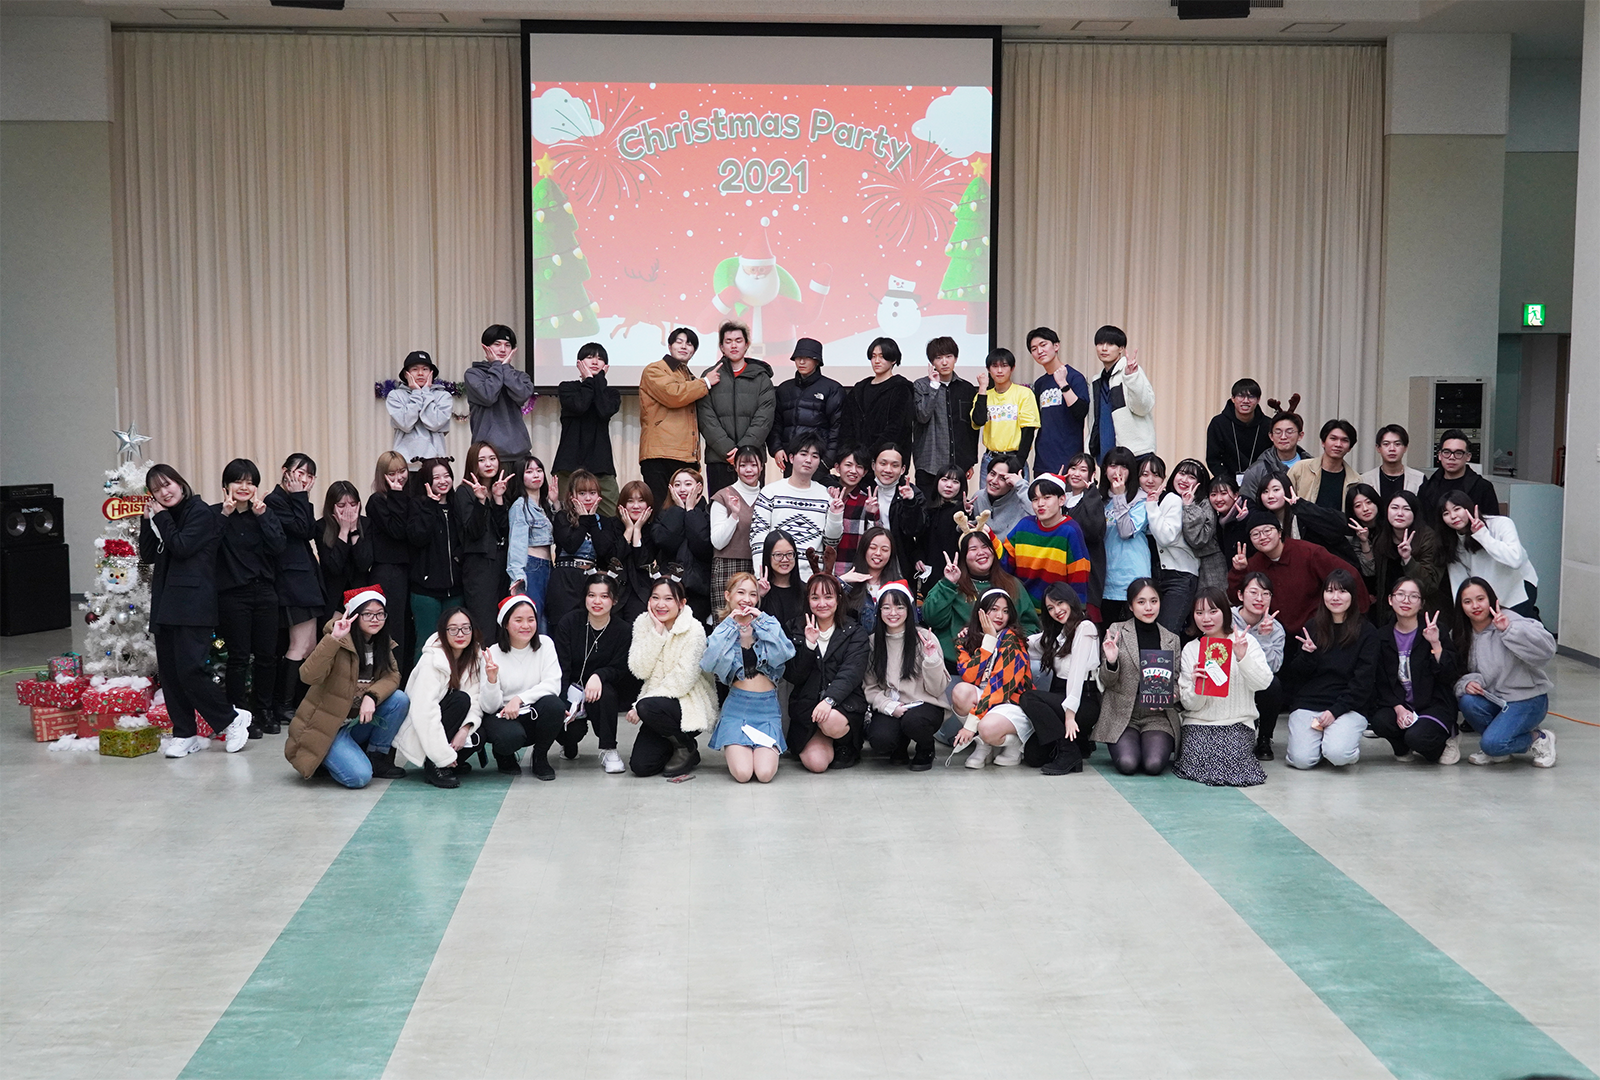 Foreign Students Association主催のクリスマスパーティー2021を開催しました